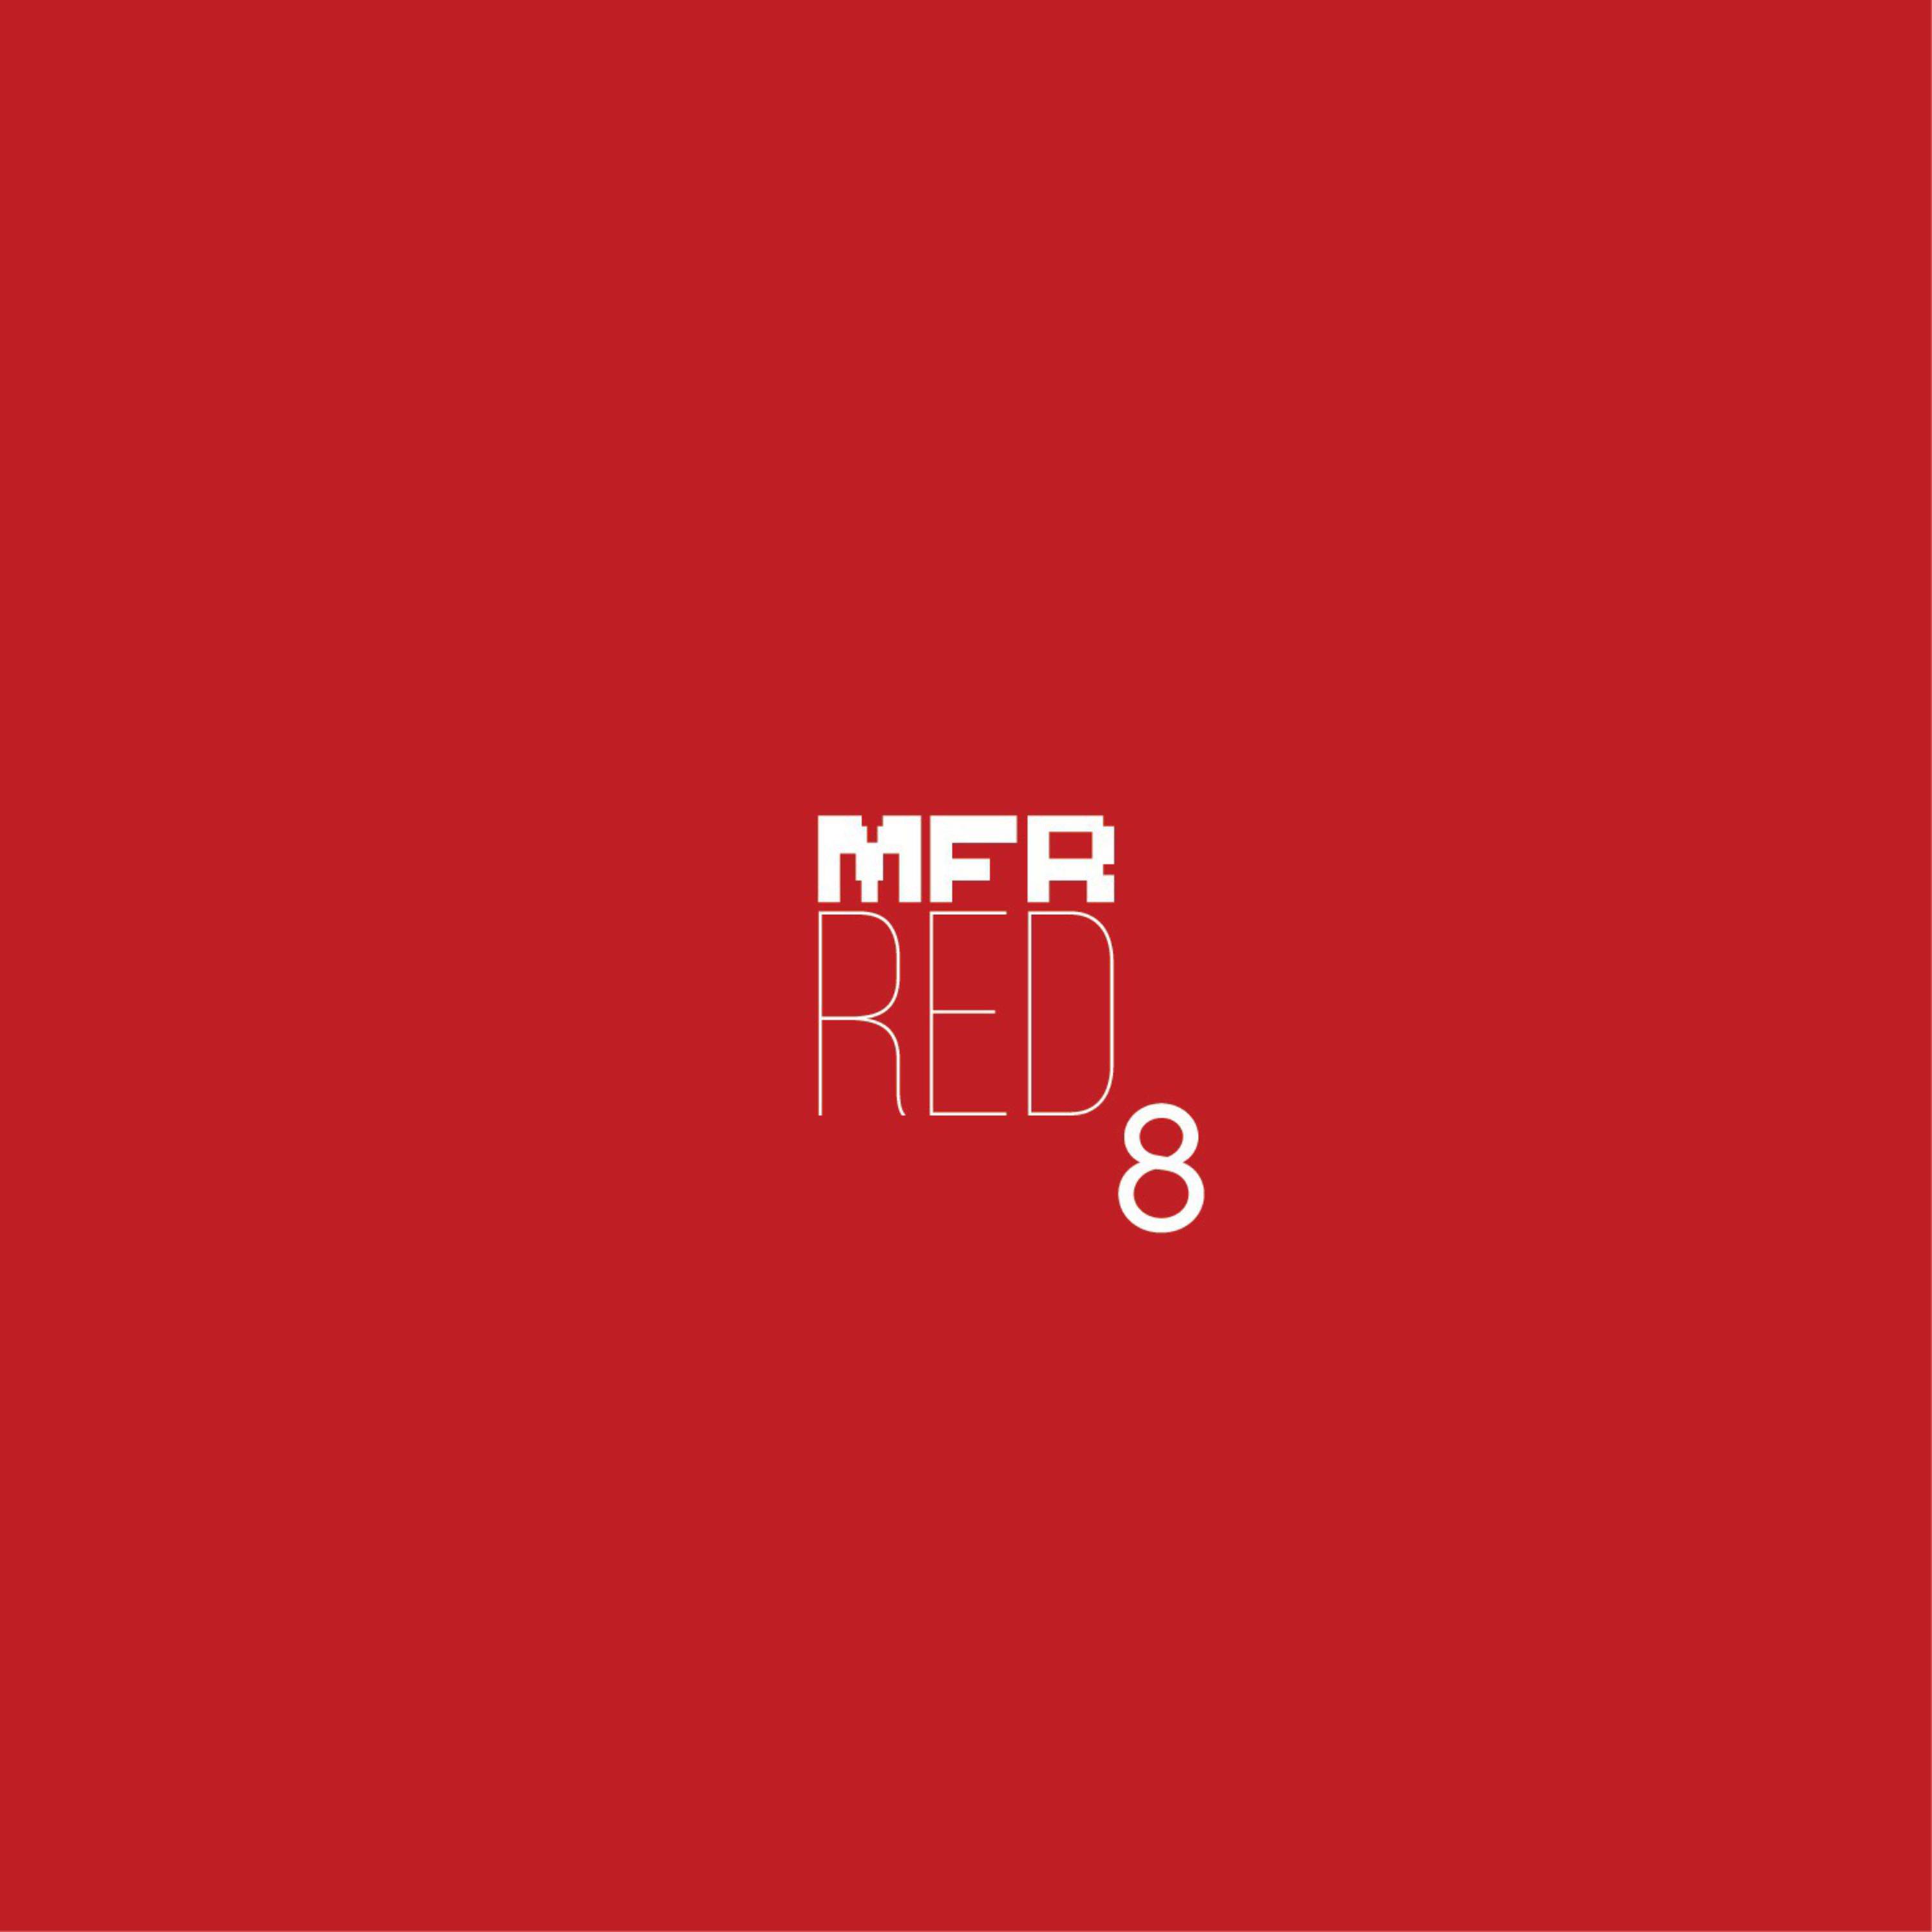 MFR RED 8